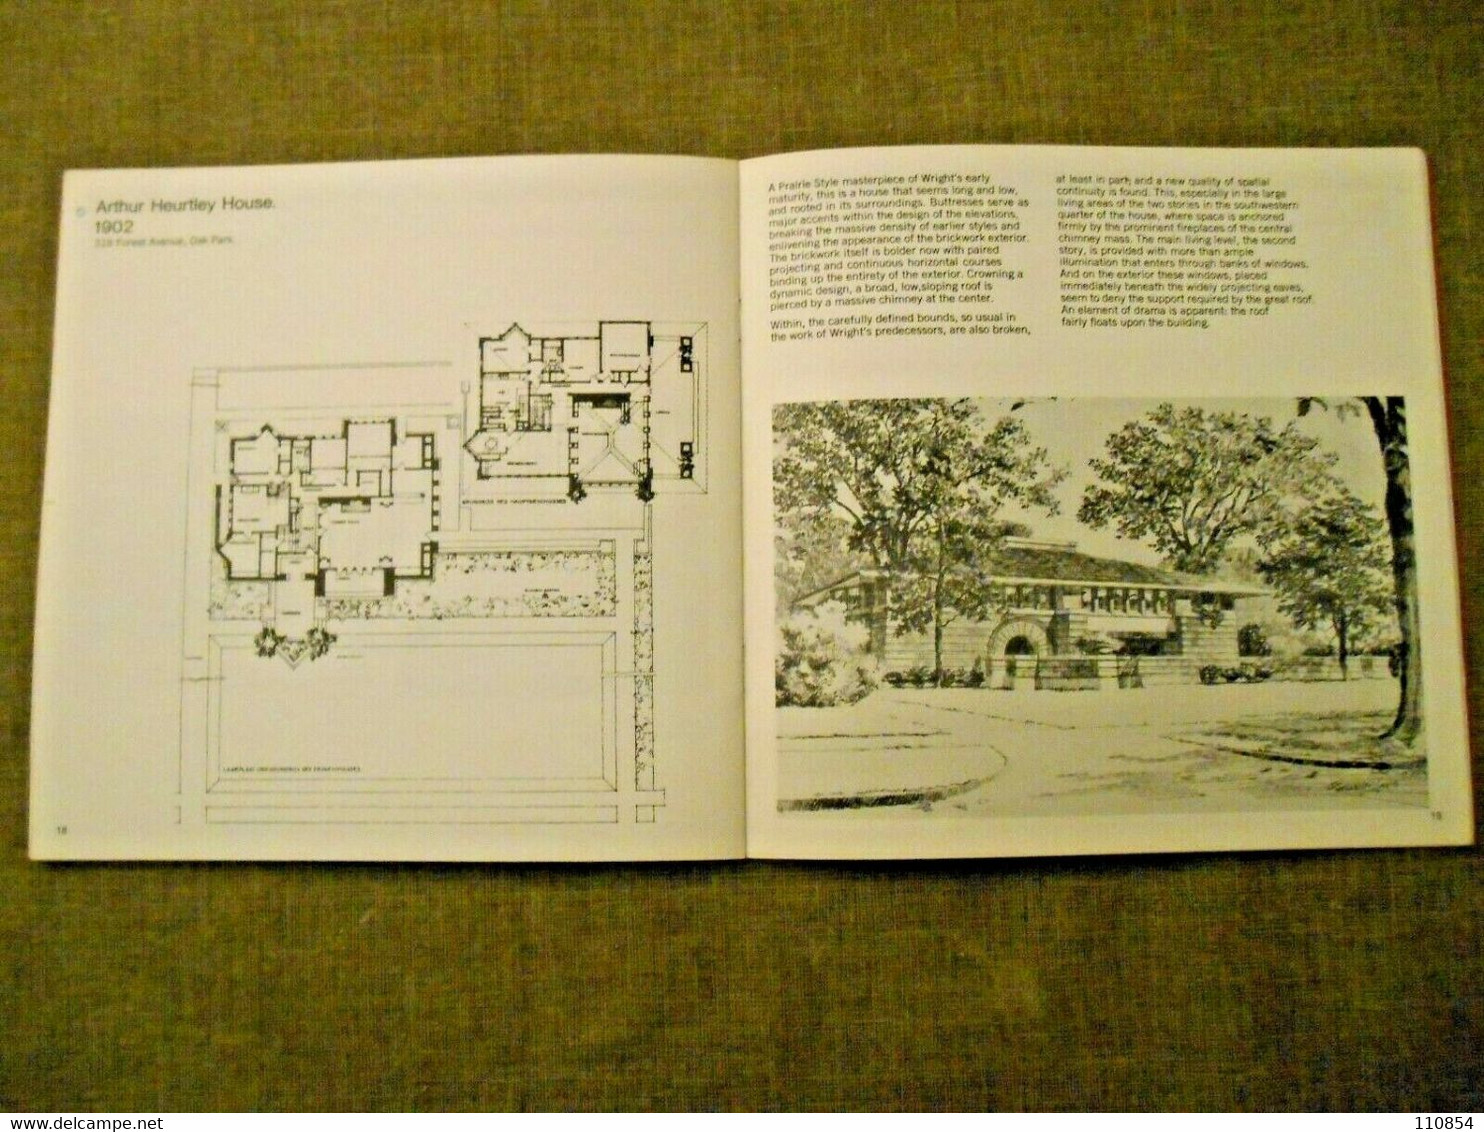 Architettura - Franck Lloyd Architecture - Chicago S.d. (anni 60) - Architettura